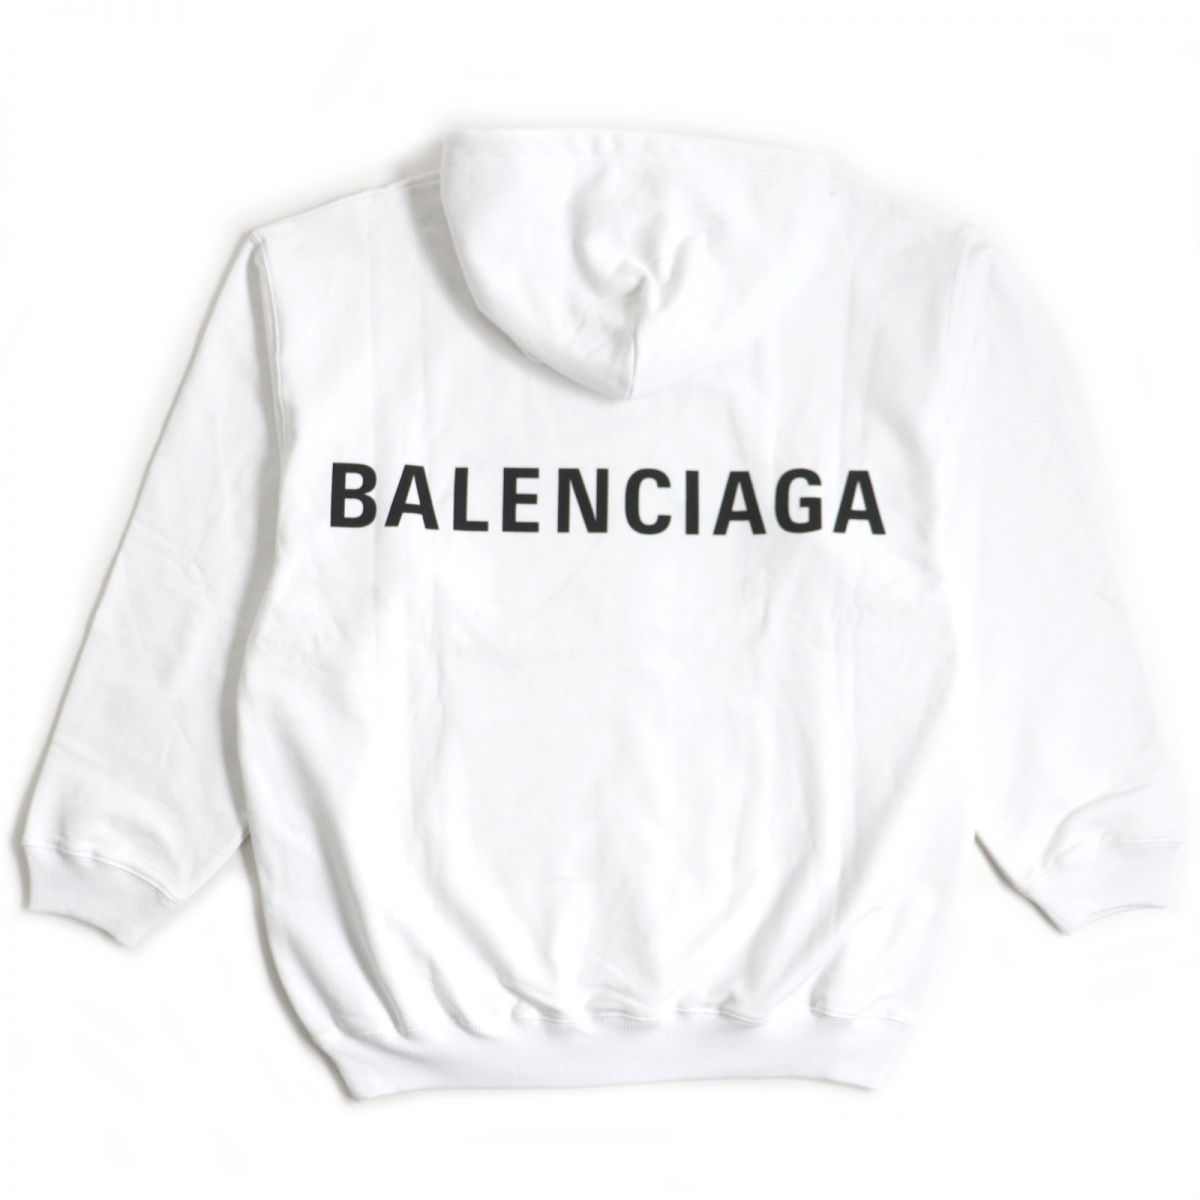 未使用品▽19AW BALENCIAGA バレンシアガ 556143 バックロゴプリント プルオーバーパーカー/フーディ ホワイト M メンズ  タグ付き - メルカリ